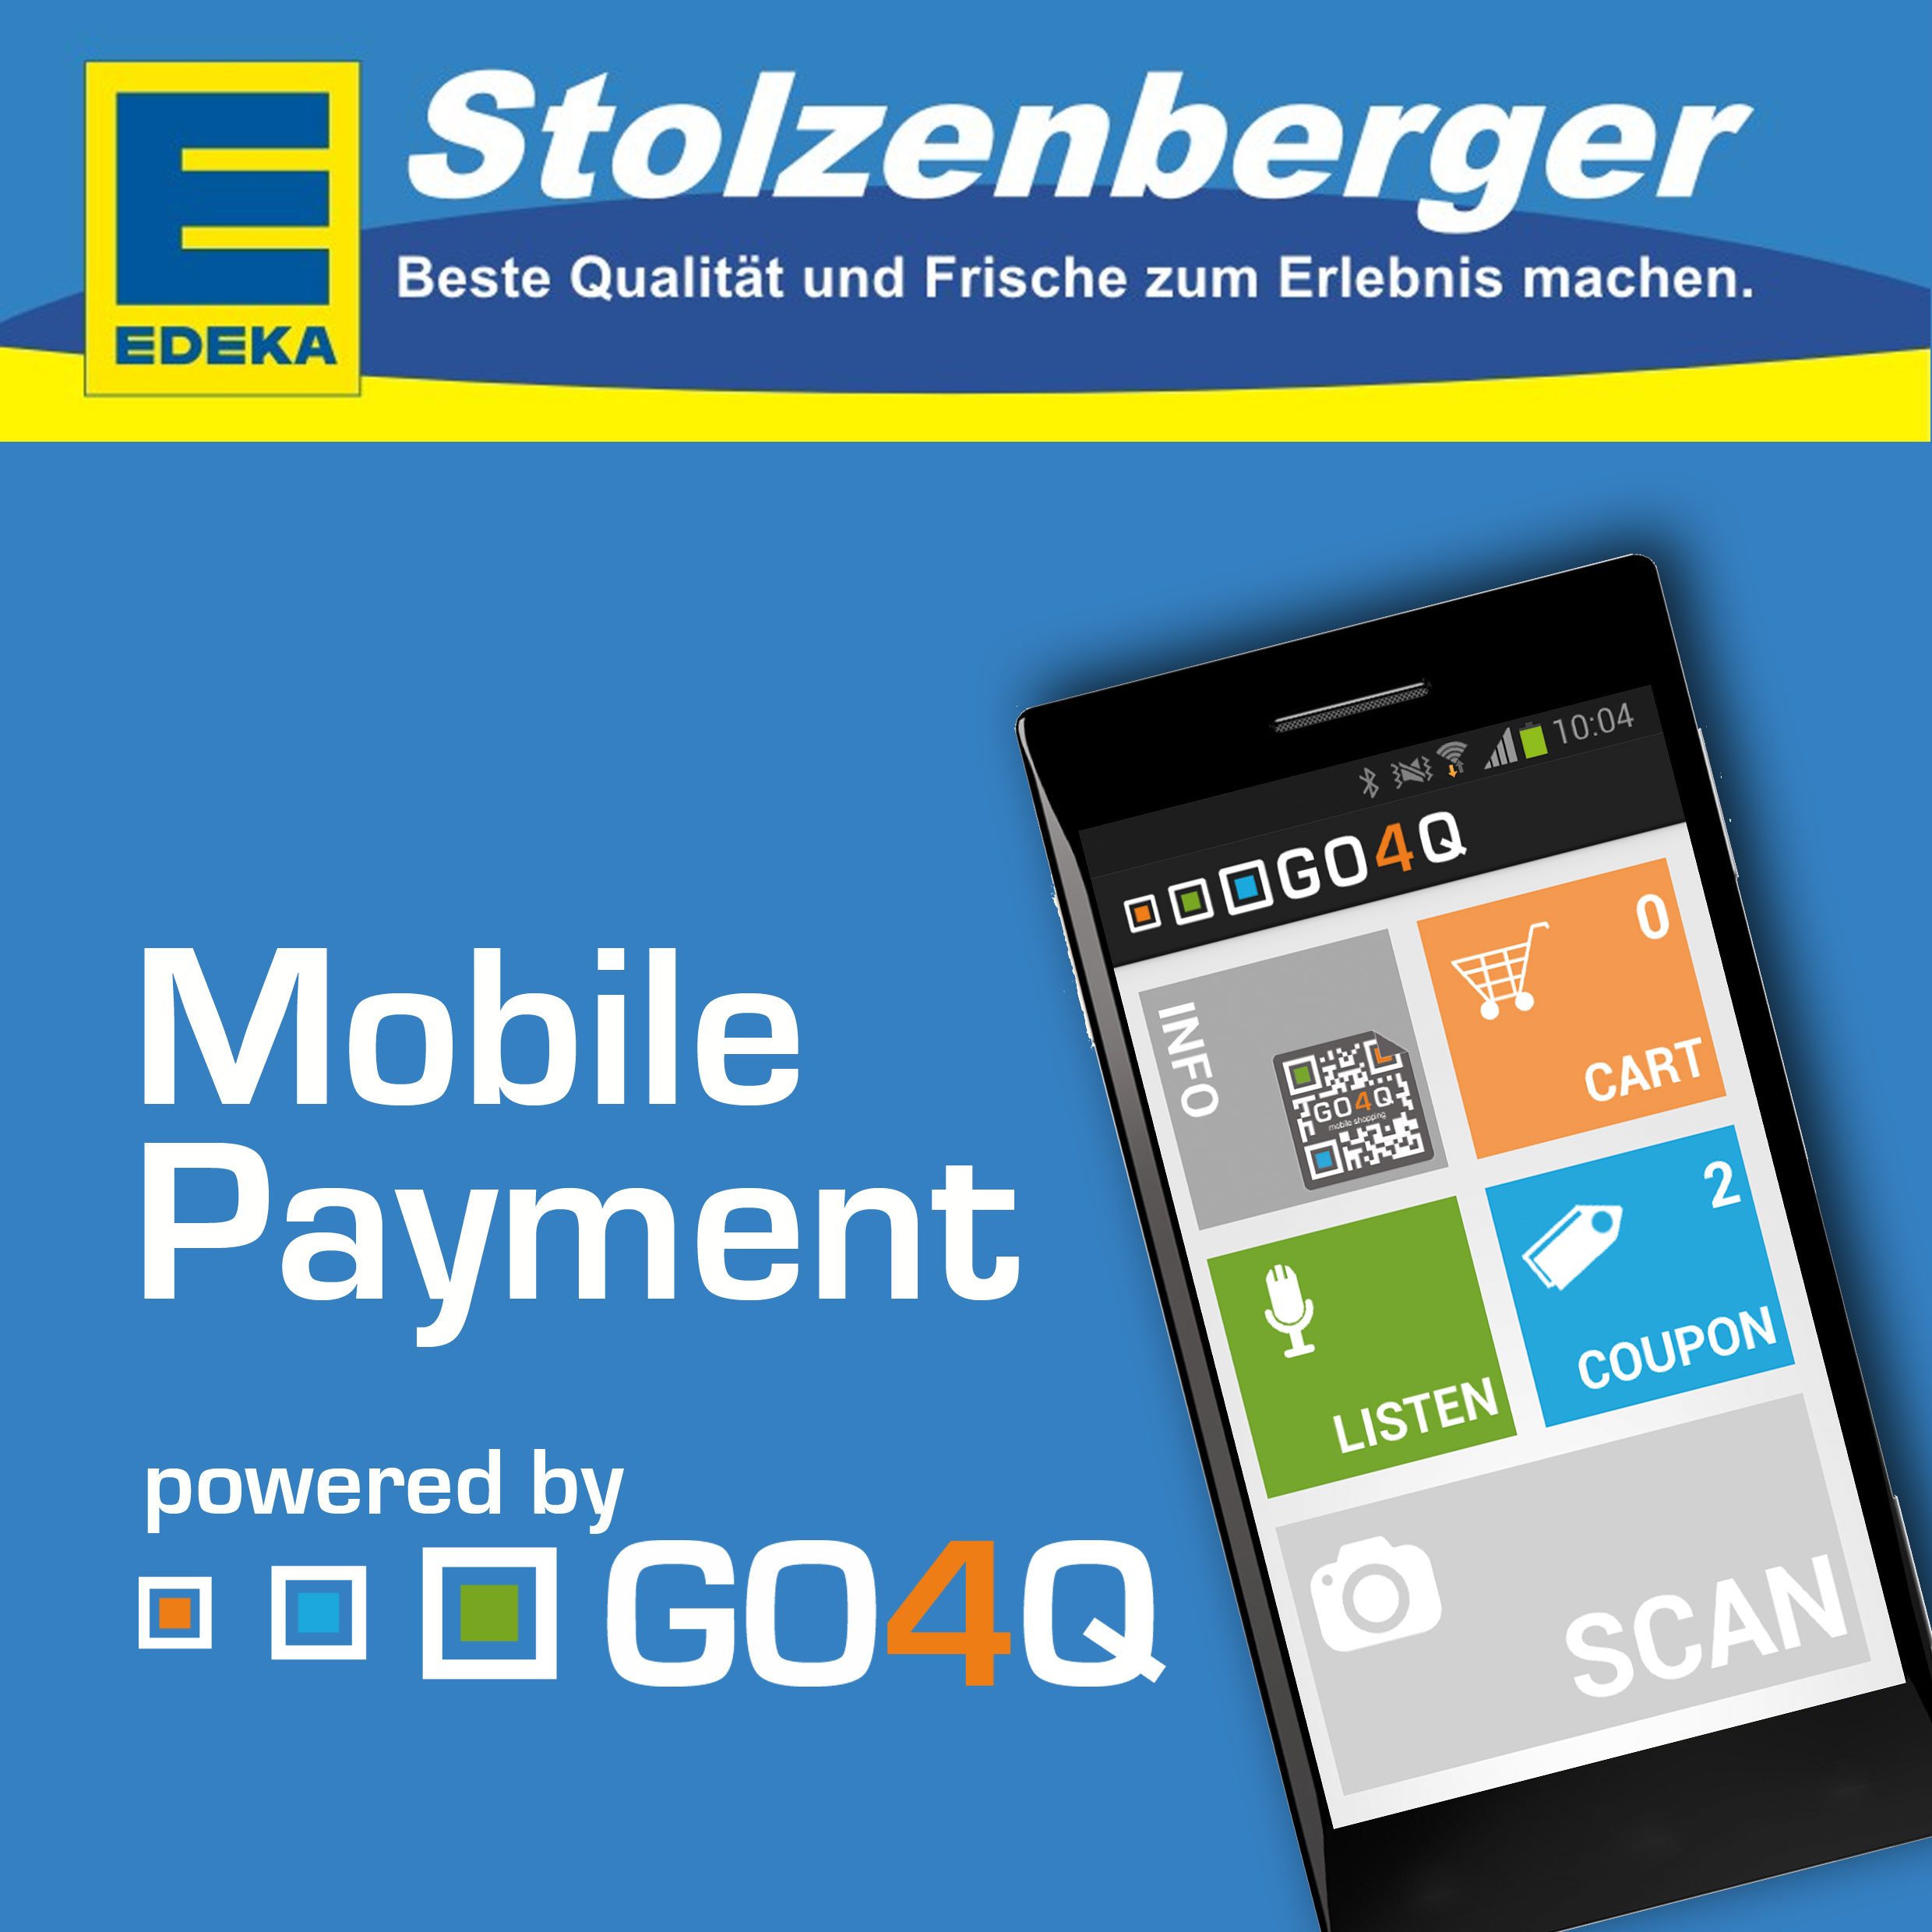 Heimwerker-Infos.de - Infos & Tipps rund um's Heimwerken | Mobile Payment mit GO4Q jetzt auch bei EDEKA Stolzenberger